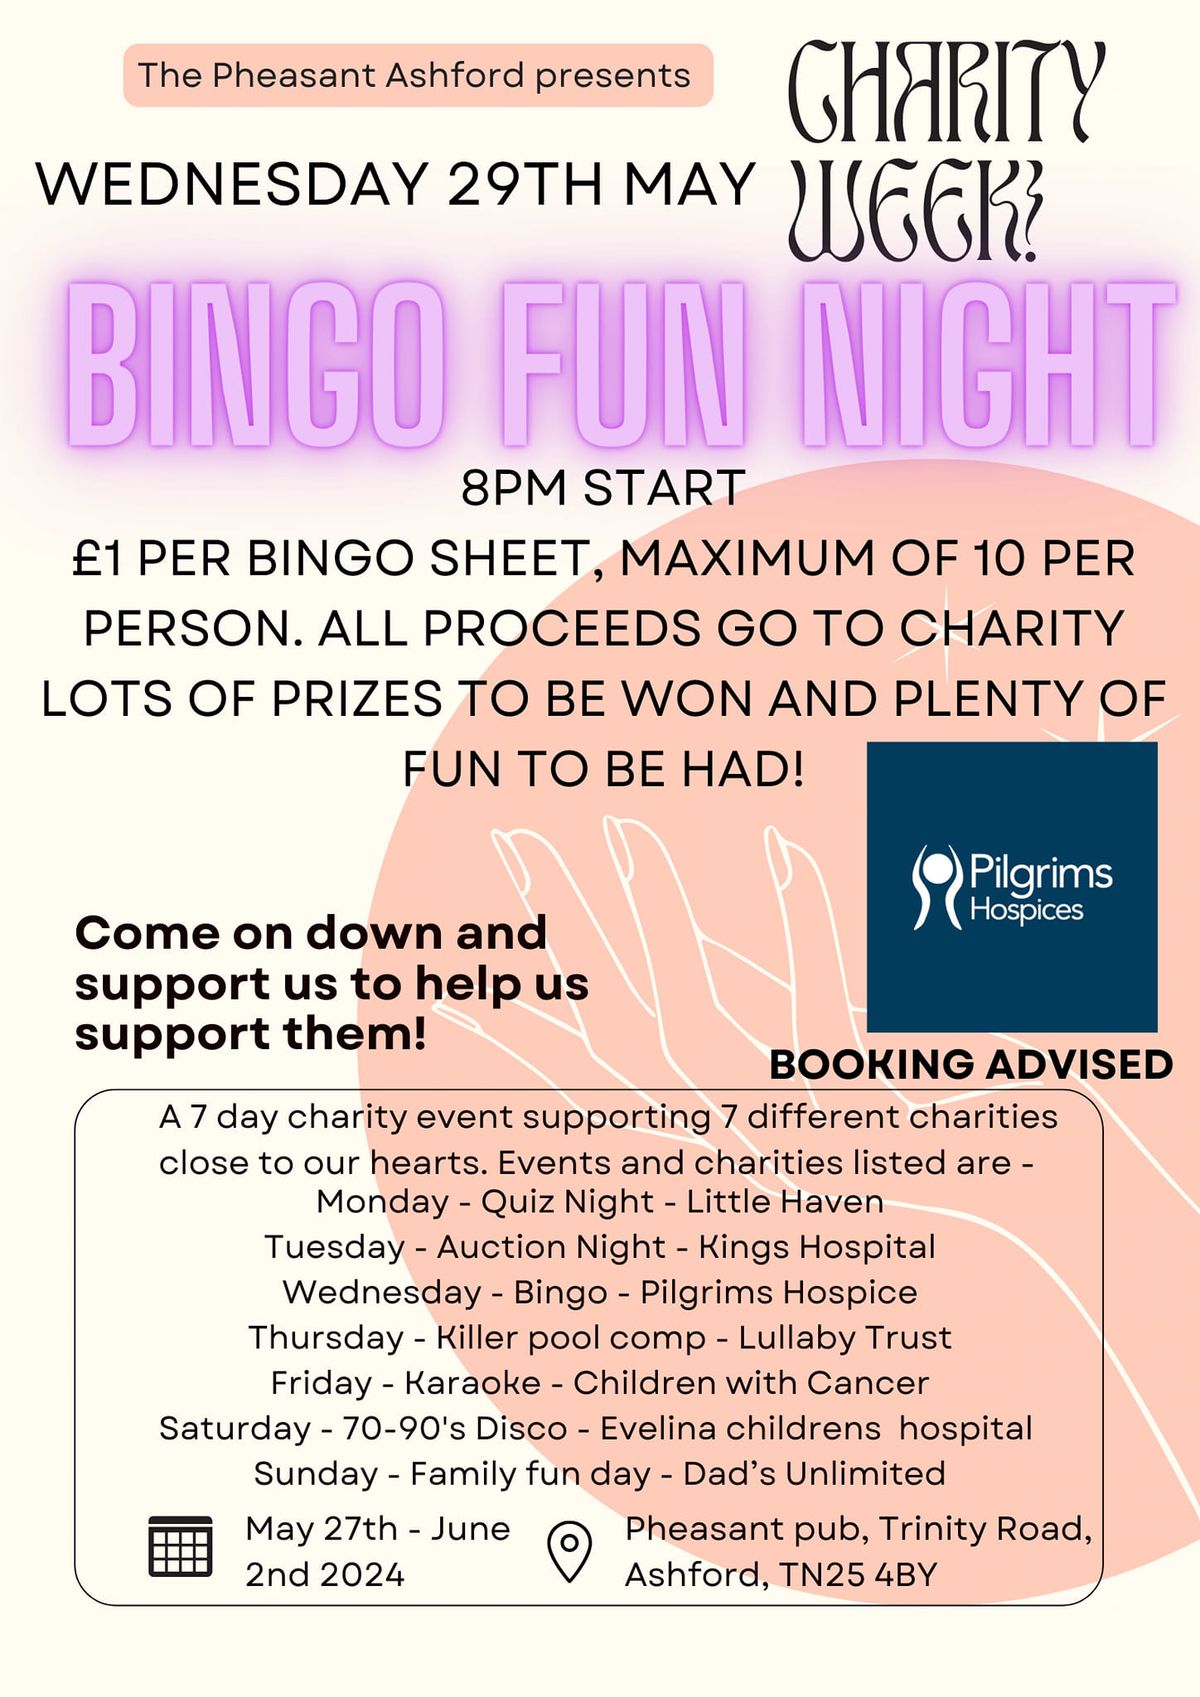 Bingo Fun Night - Charity Week 